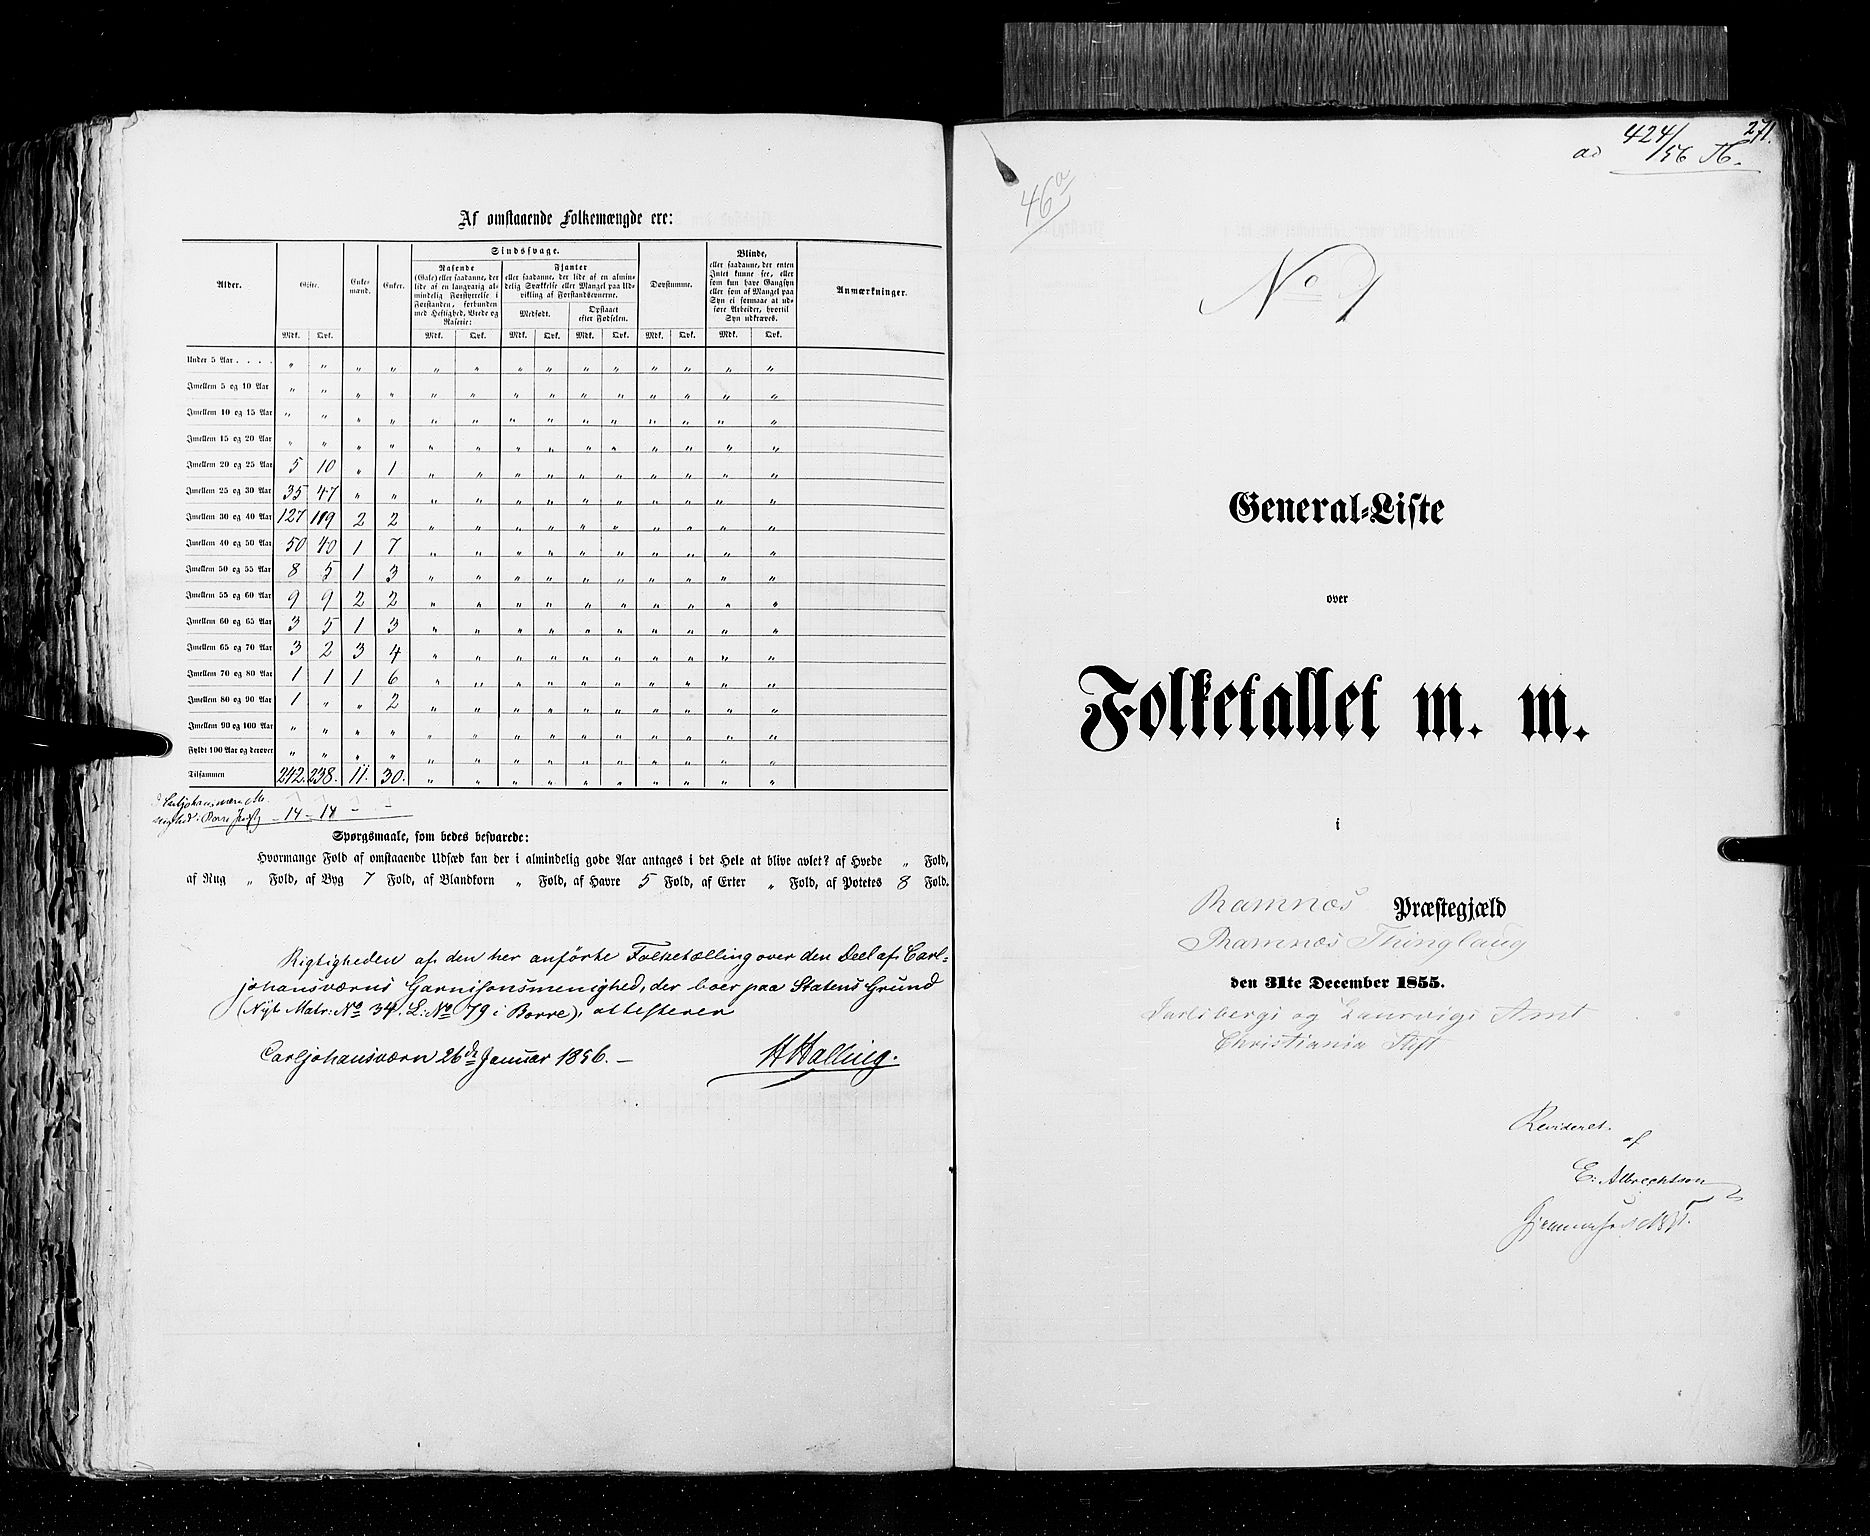 RA, Census 1855, vol. 2: Kristians amt, Buskerud amt og Jarlsberg og Larvik amt, 1855, p. 271